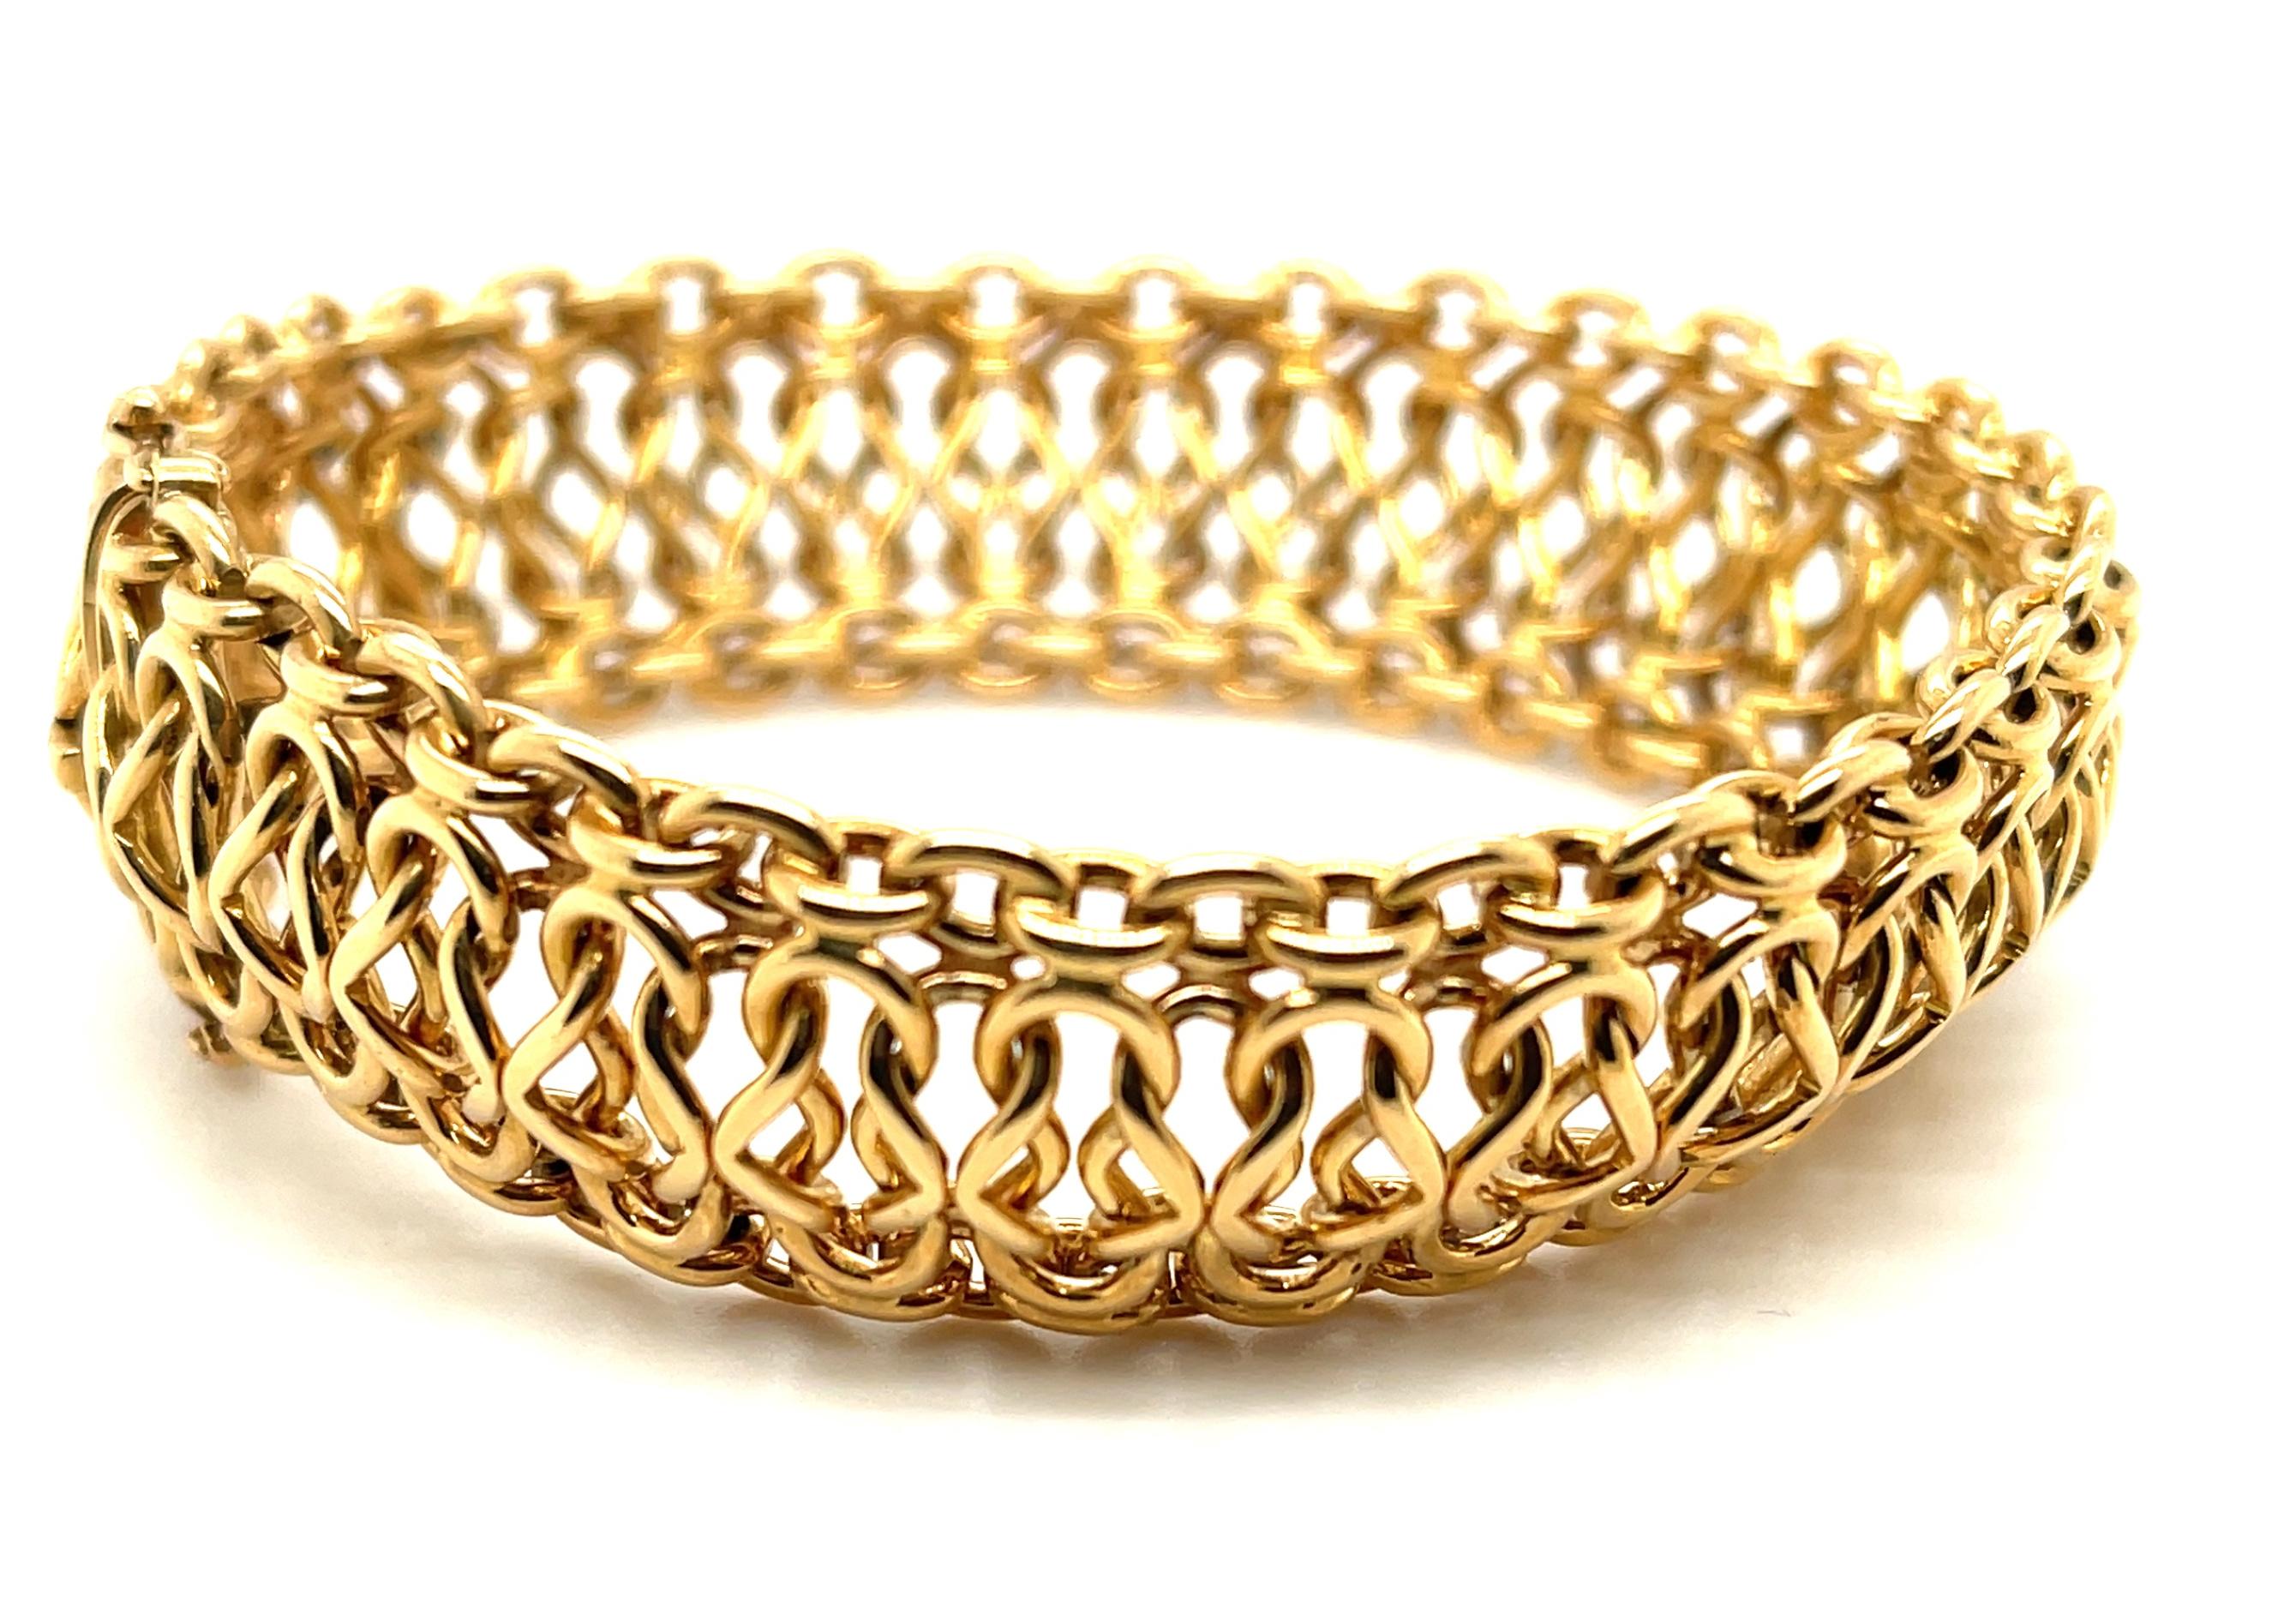 Ce superbe bracelet en or italien a l'aspect et la sensation du luxe à l'état pur ! Les maillons magnifiquement entrelacés en or jaune 18 carats hautement poli créent un merveilleux mouvement visuel et réel, dans un design ultra-confortable qui fait